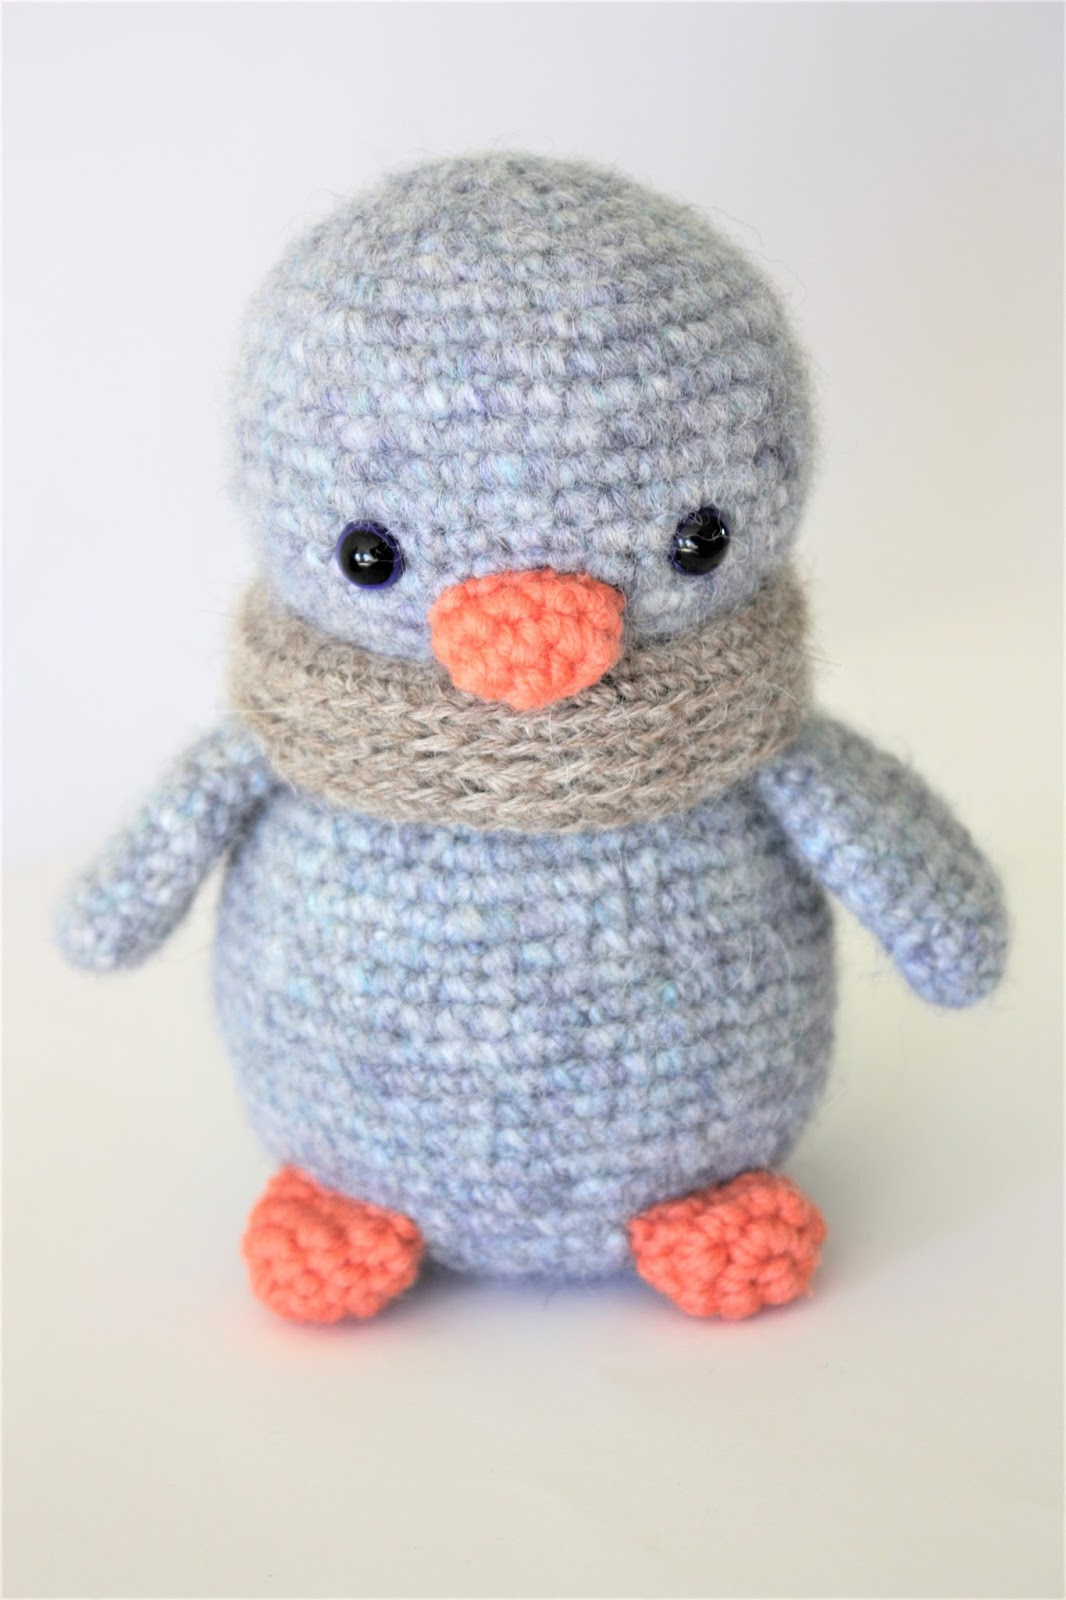 Crochet Penguin Pattern Happyamigurumi Arnold The Penguin New Amigurumi Crochet Tutorial